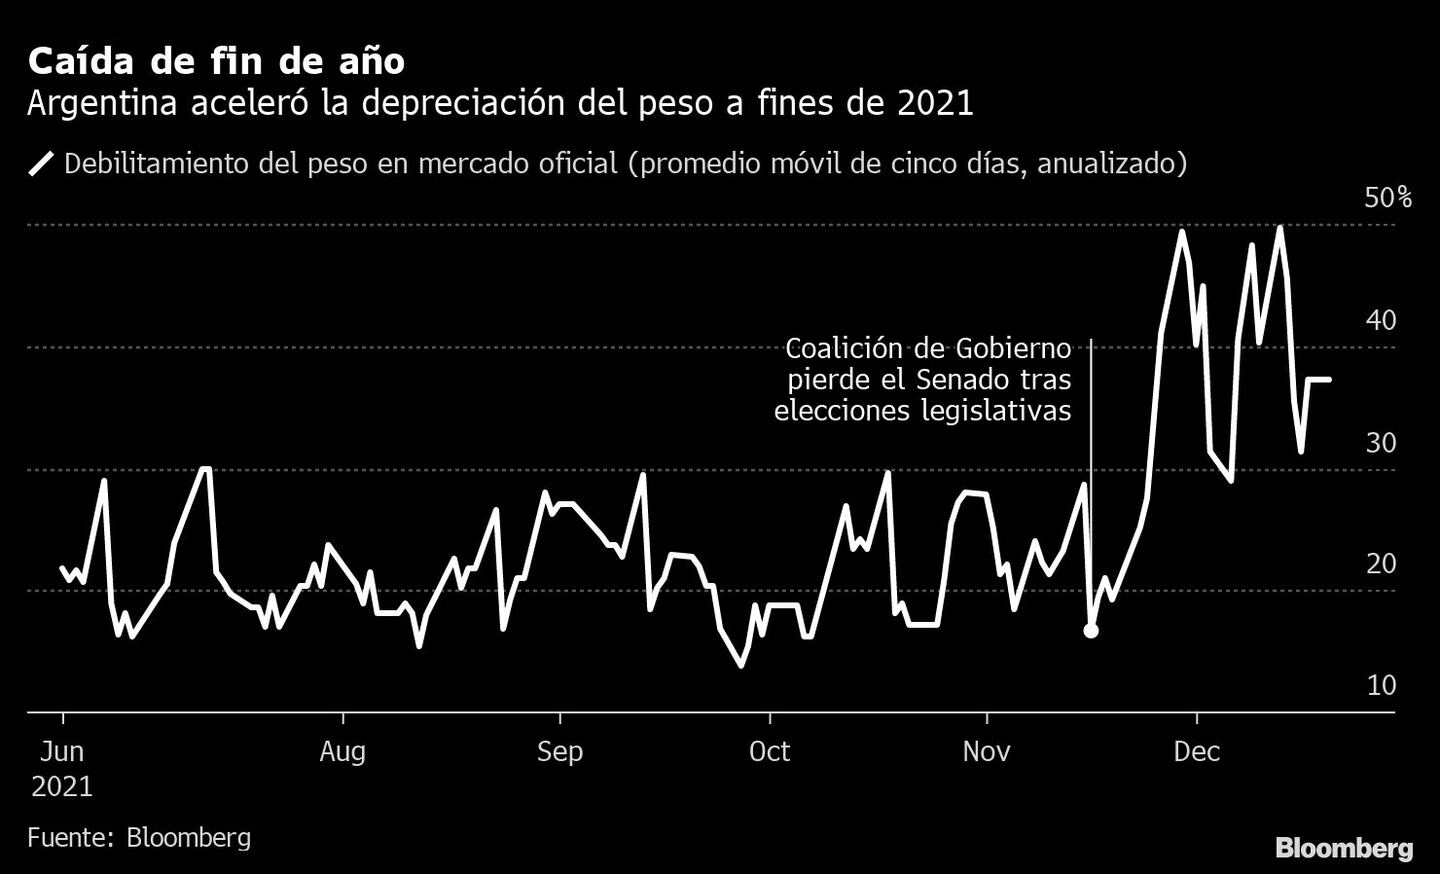 Argentina aceleró depreciación del peso a fines del 2021dfd